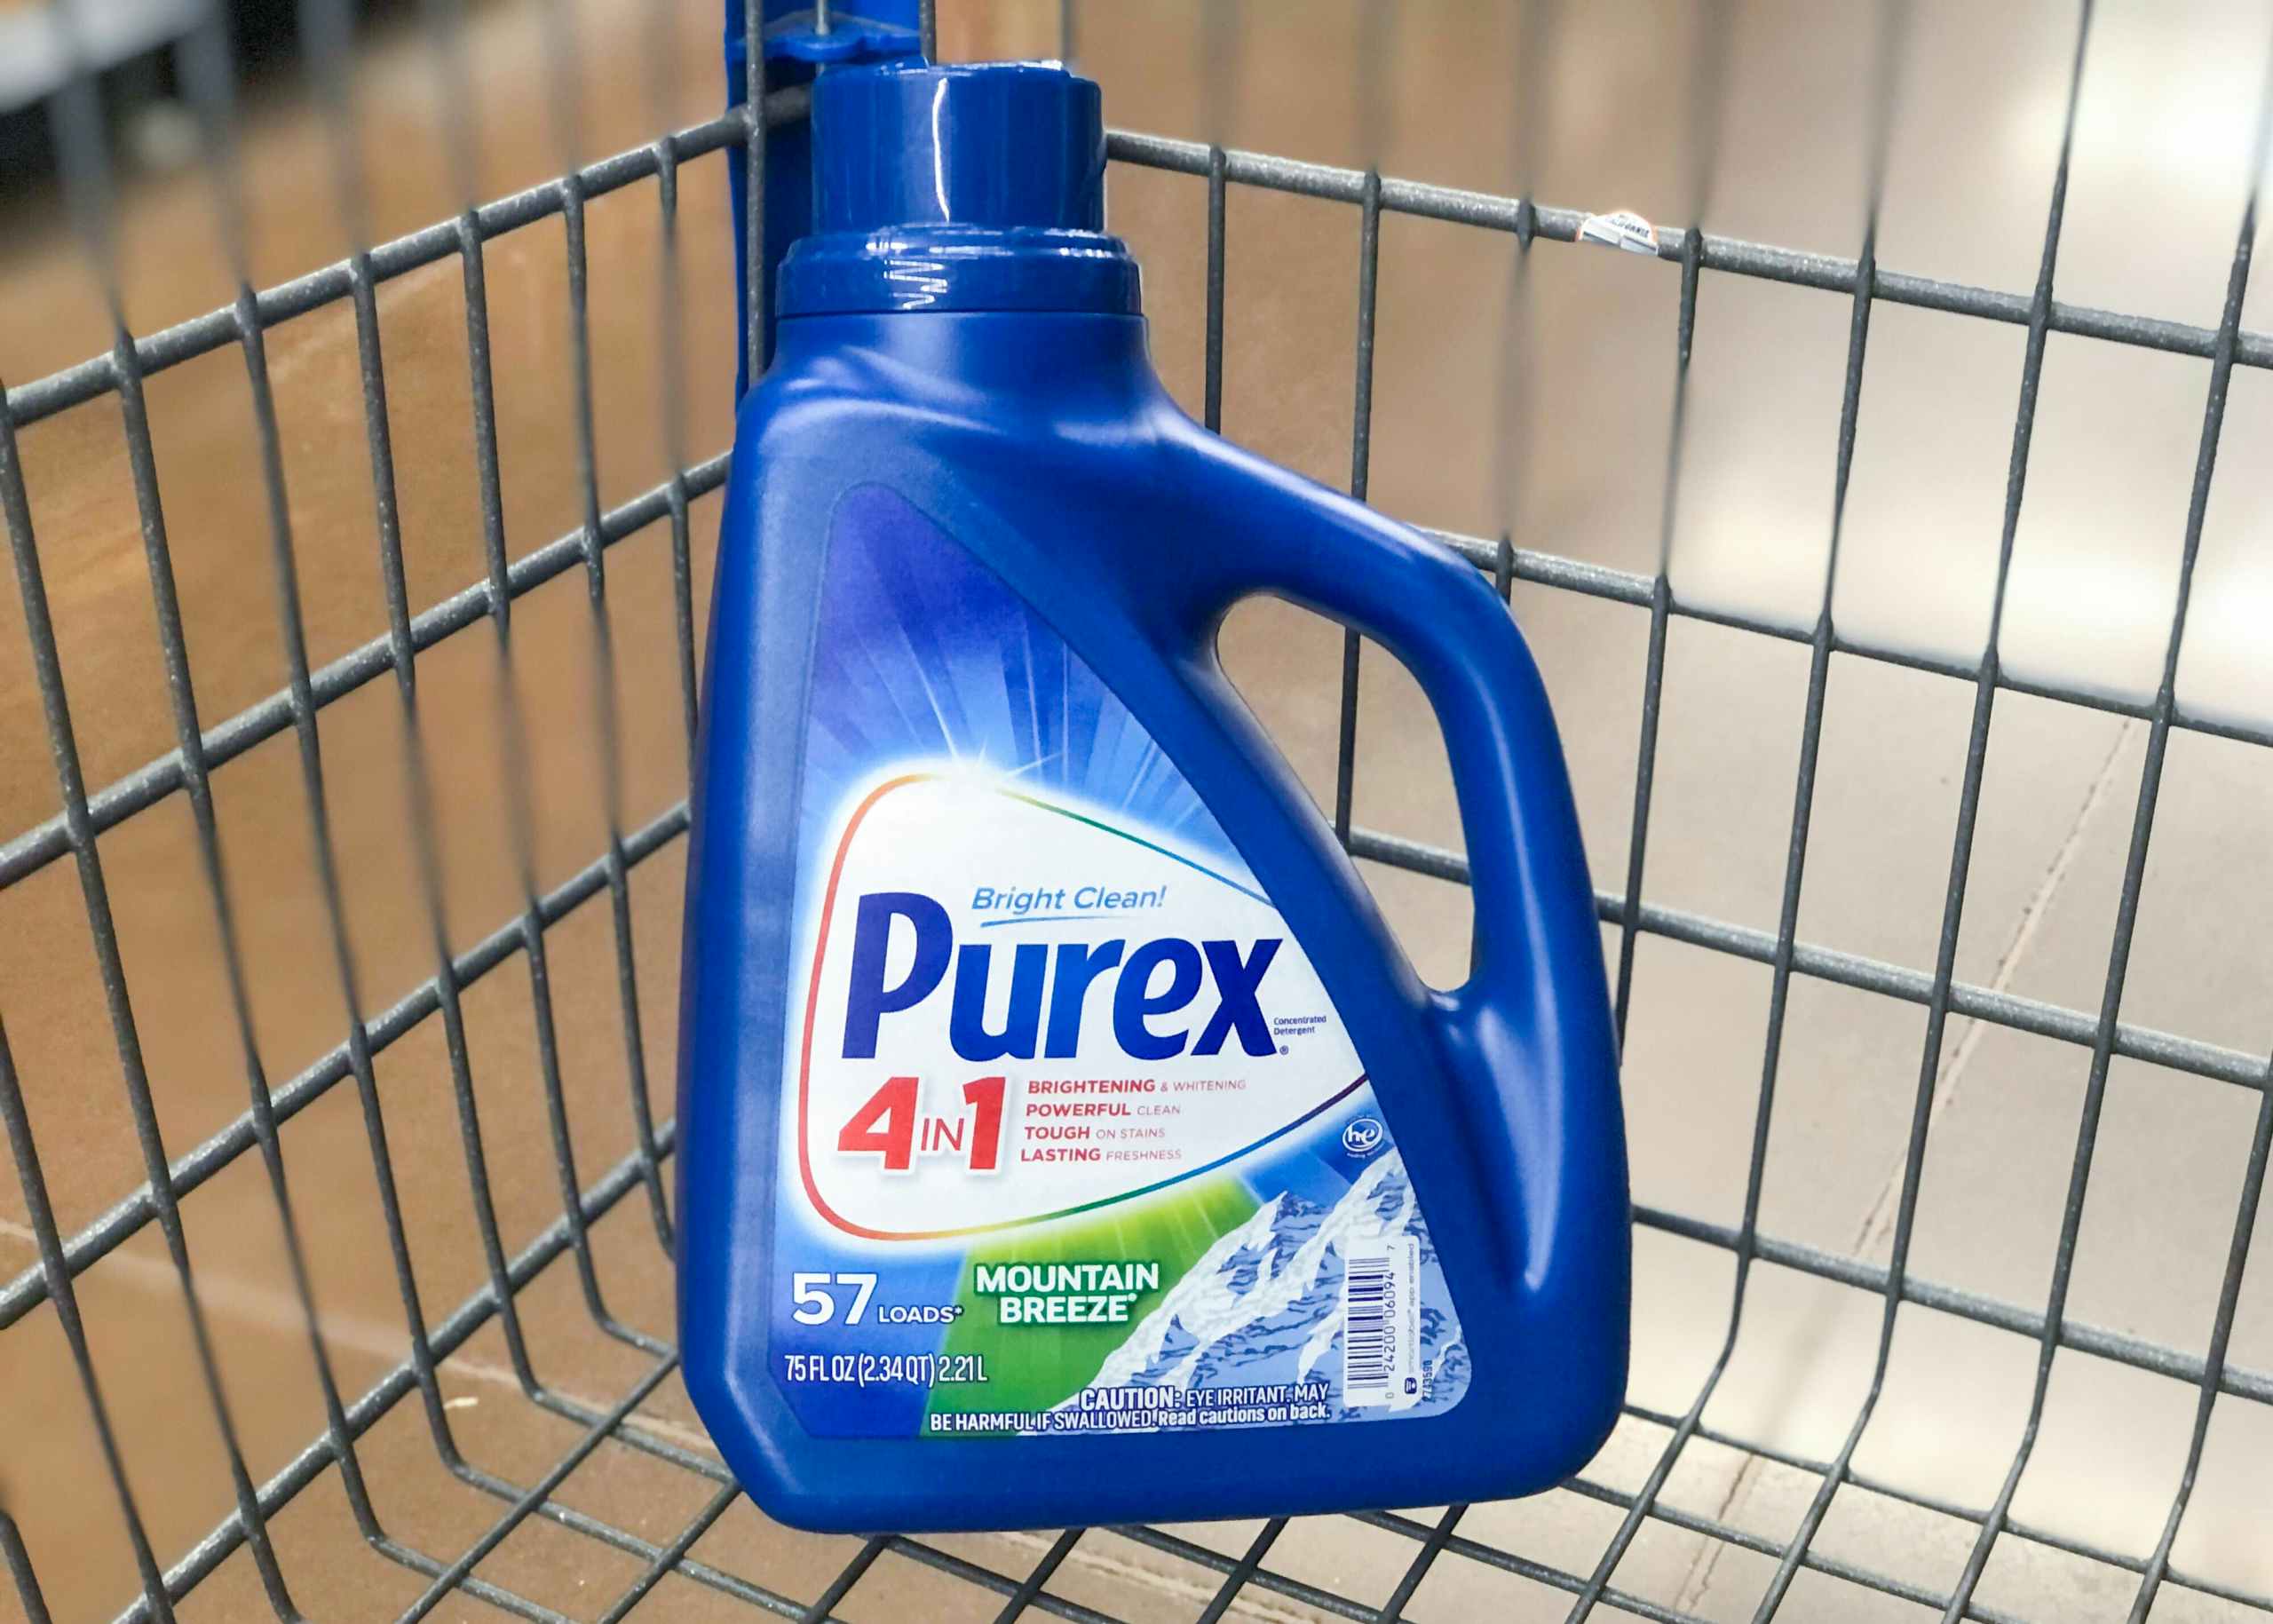 walmart purex detergent in cart